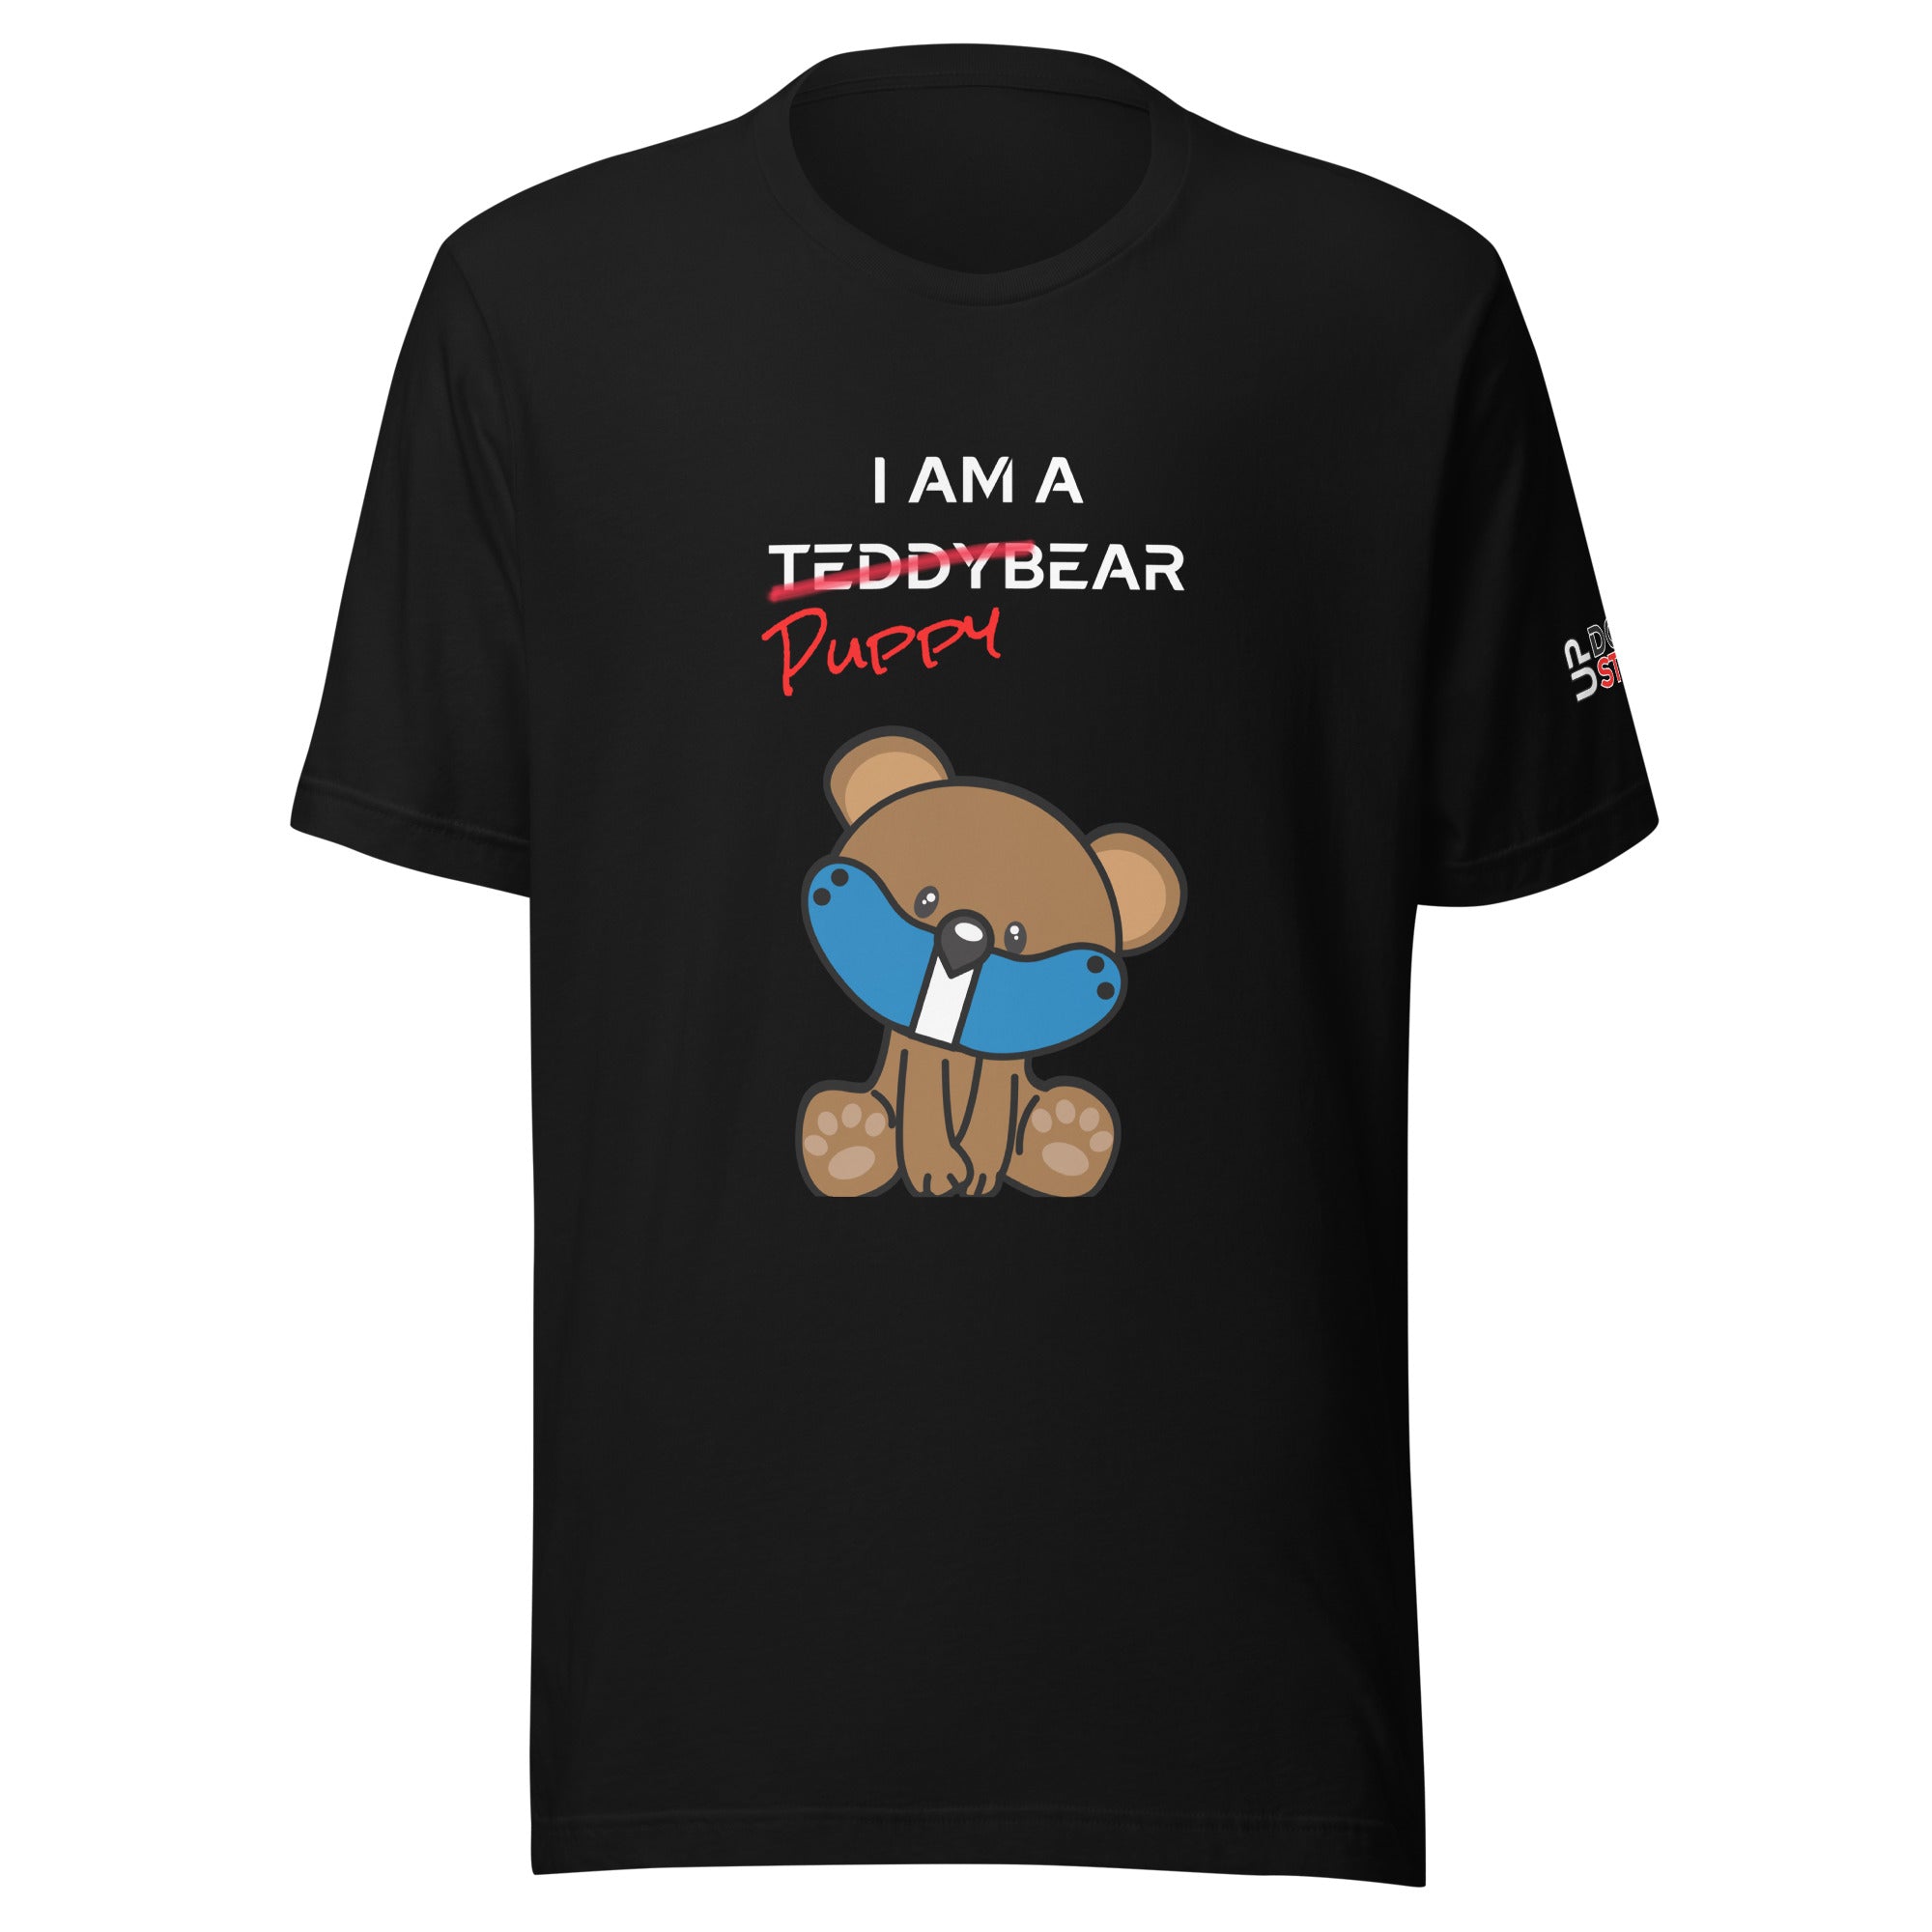 I am a PuppyBear / T-Shirt / Customize